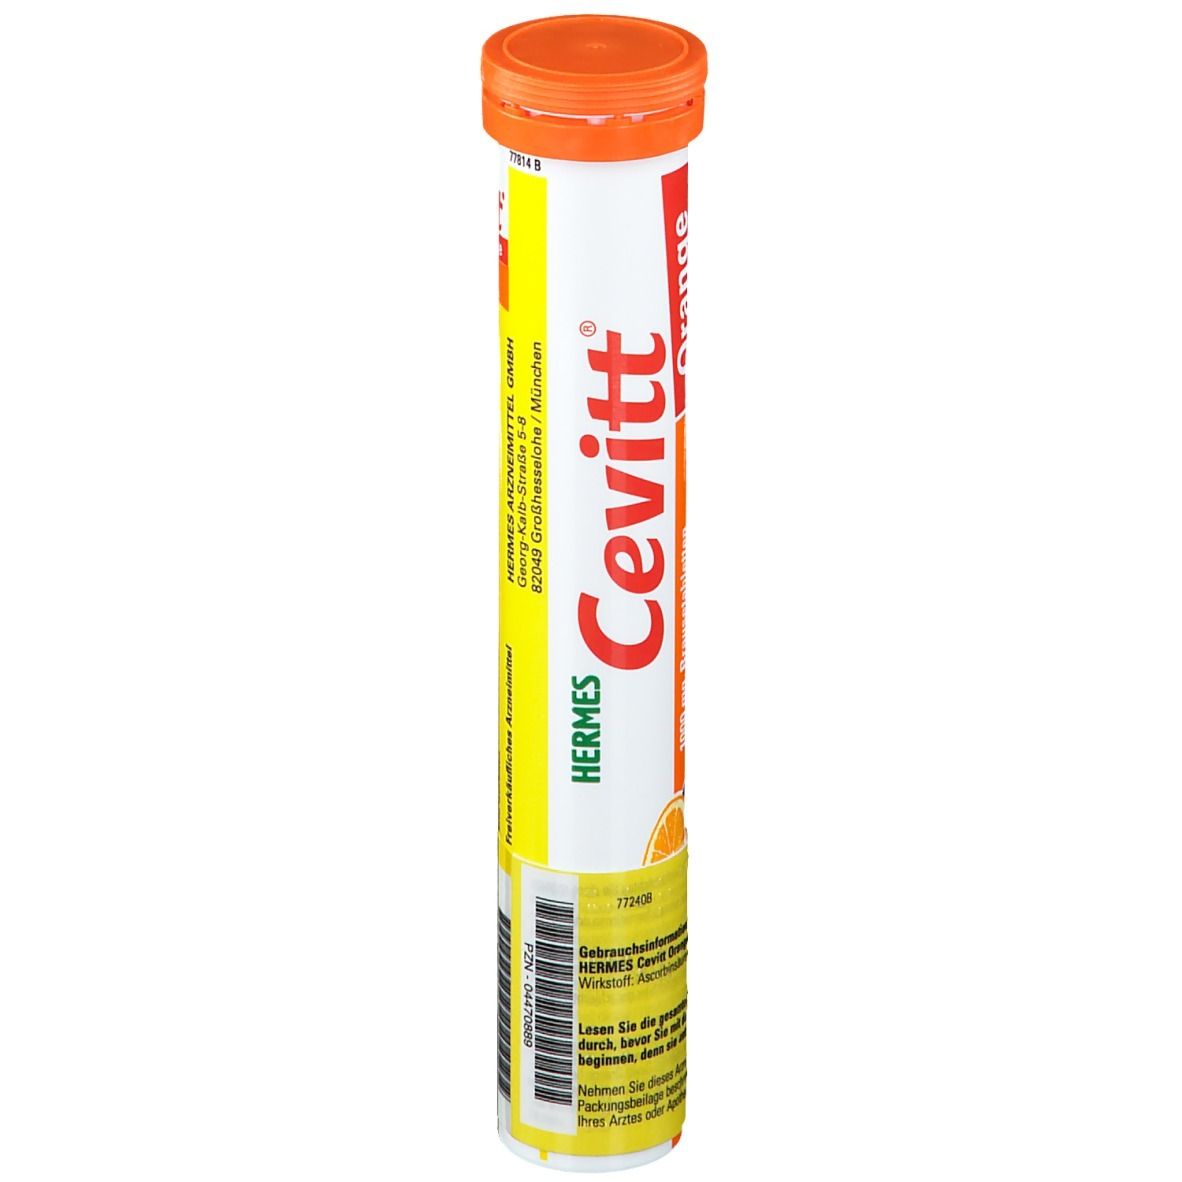 Cevitt® Brausetabletten Orange